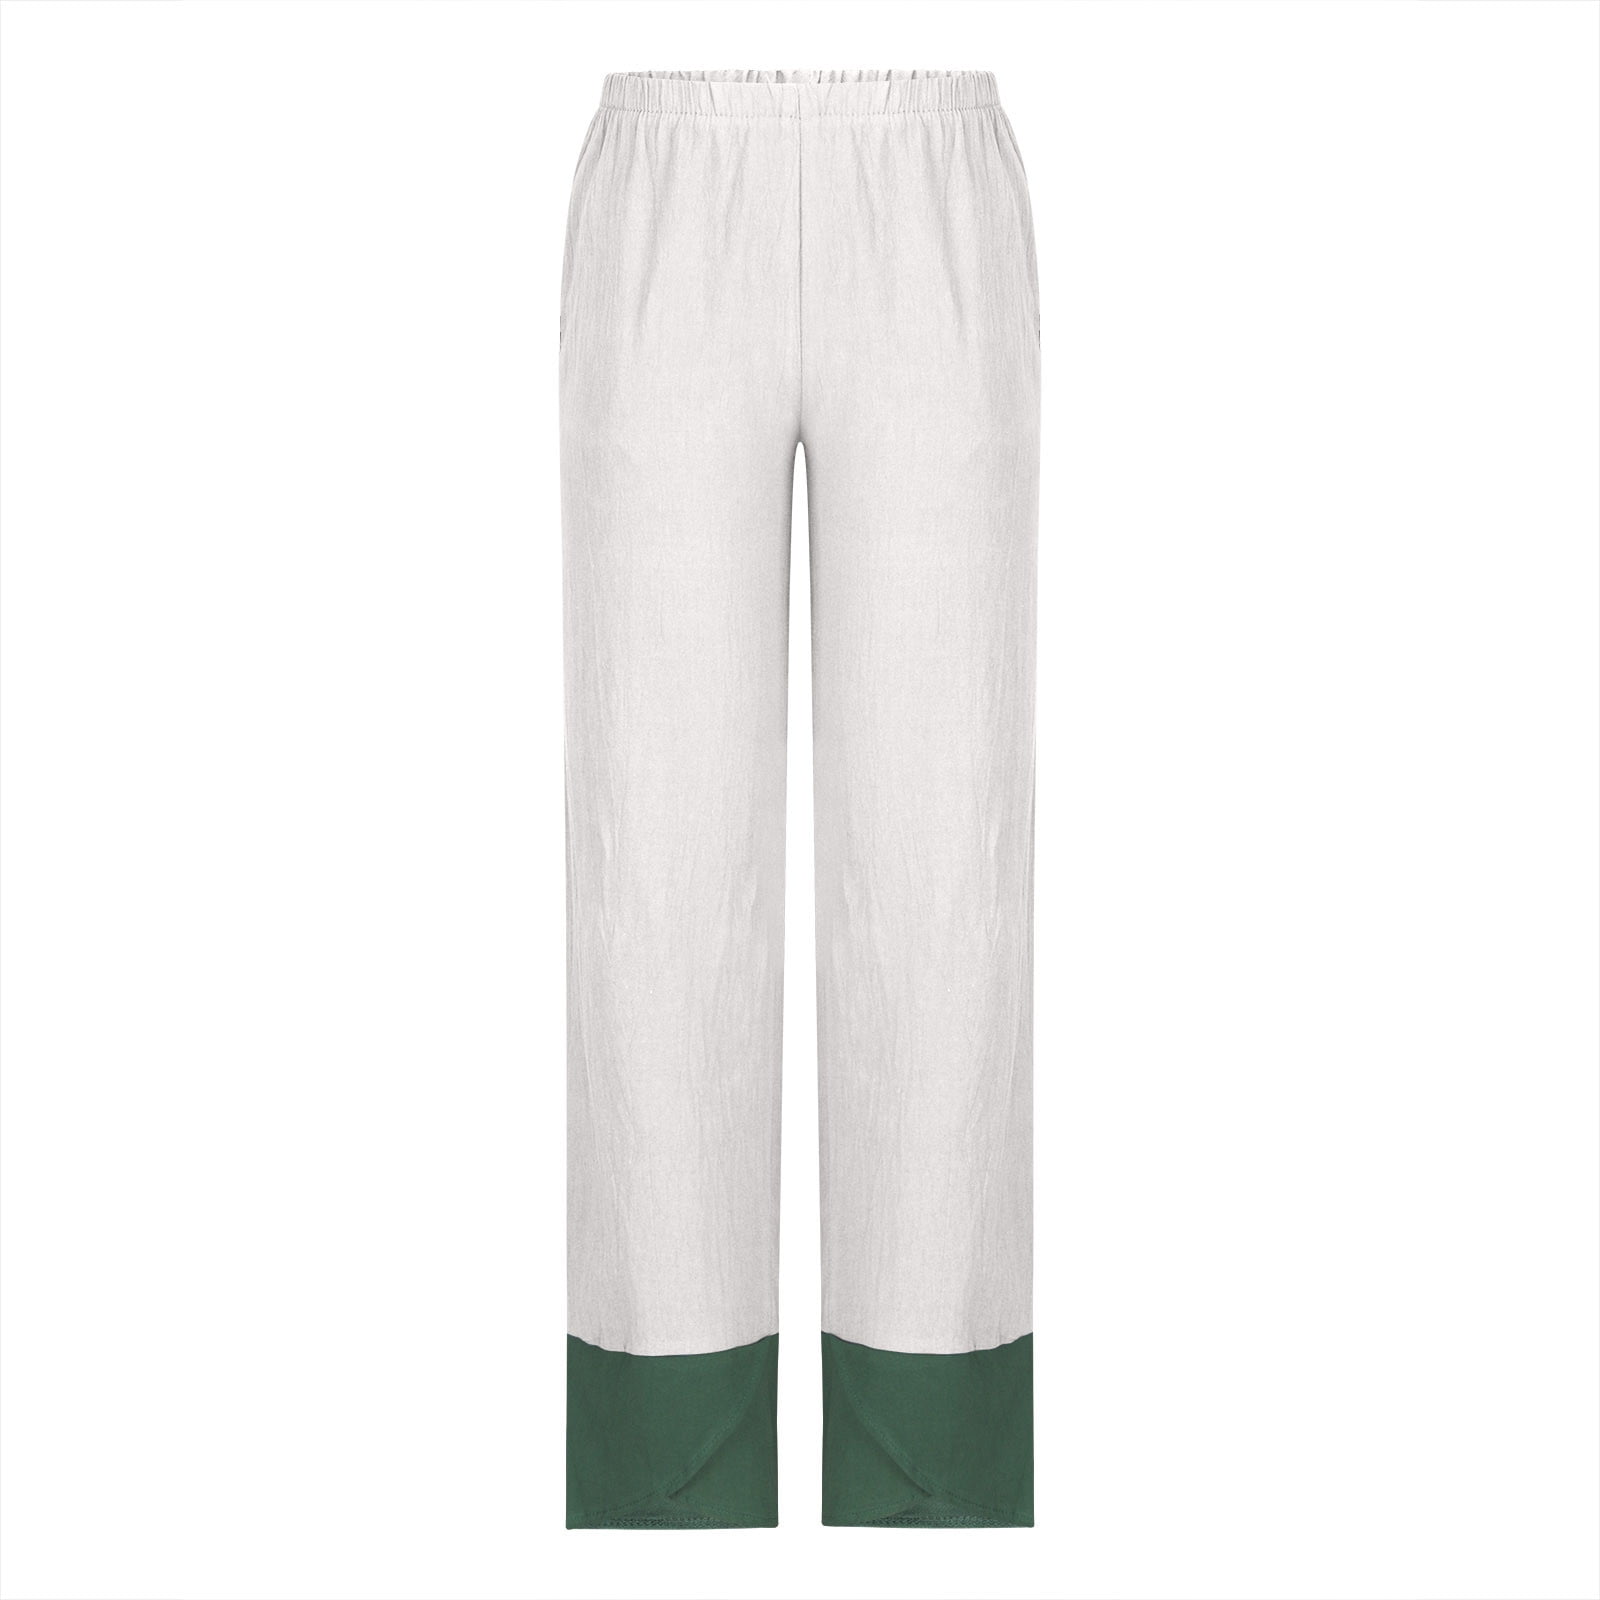 Capri Pants for Women Hippie Plus Size Summer Patchwork Pants Cool ...